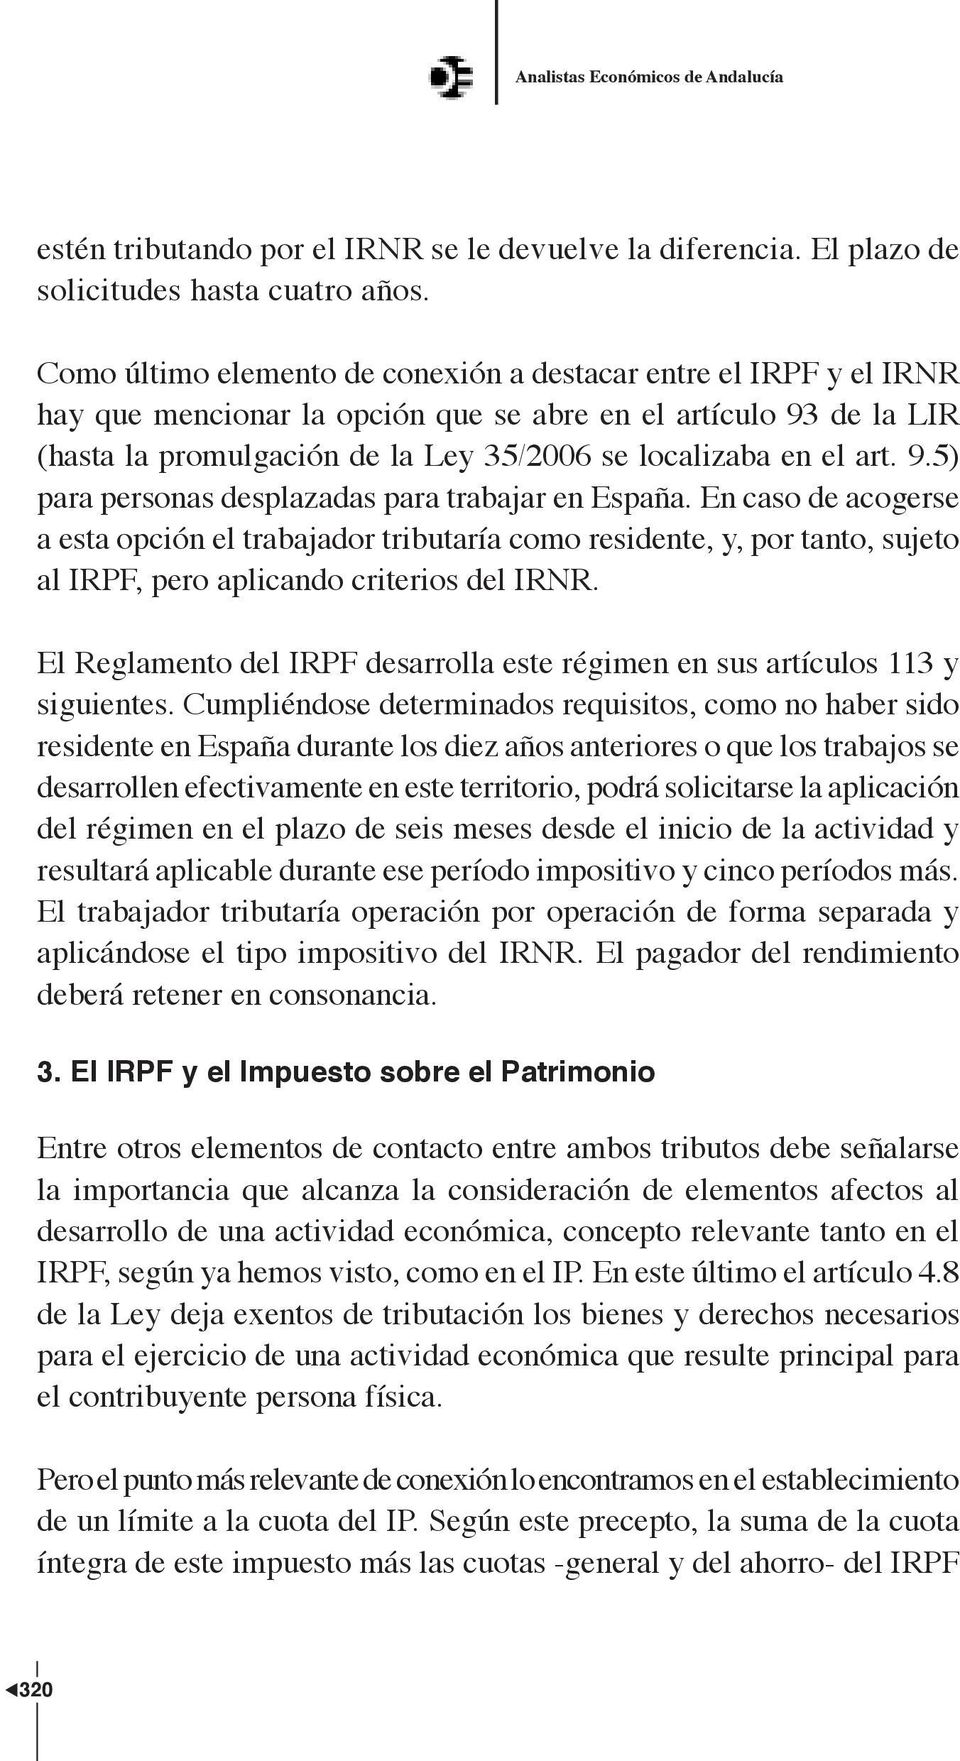 art. 9.5) para personas desplazadas para trabajar en España. En caso de acogerse a esta opción el trabajador tributaría como residente, y, por tanto, sujeto al IRPF, pero aplicando criterios del IRNR.